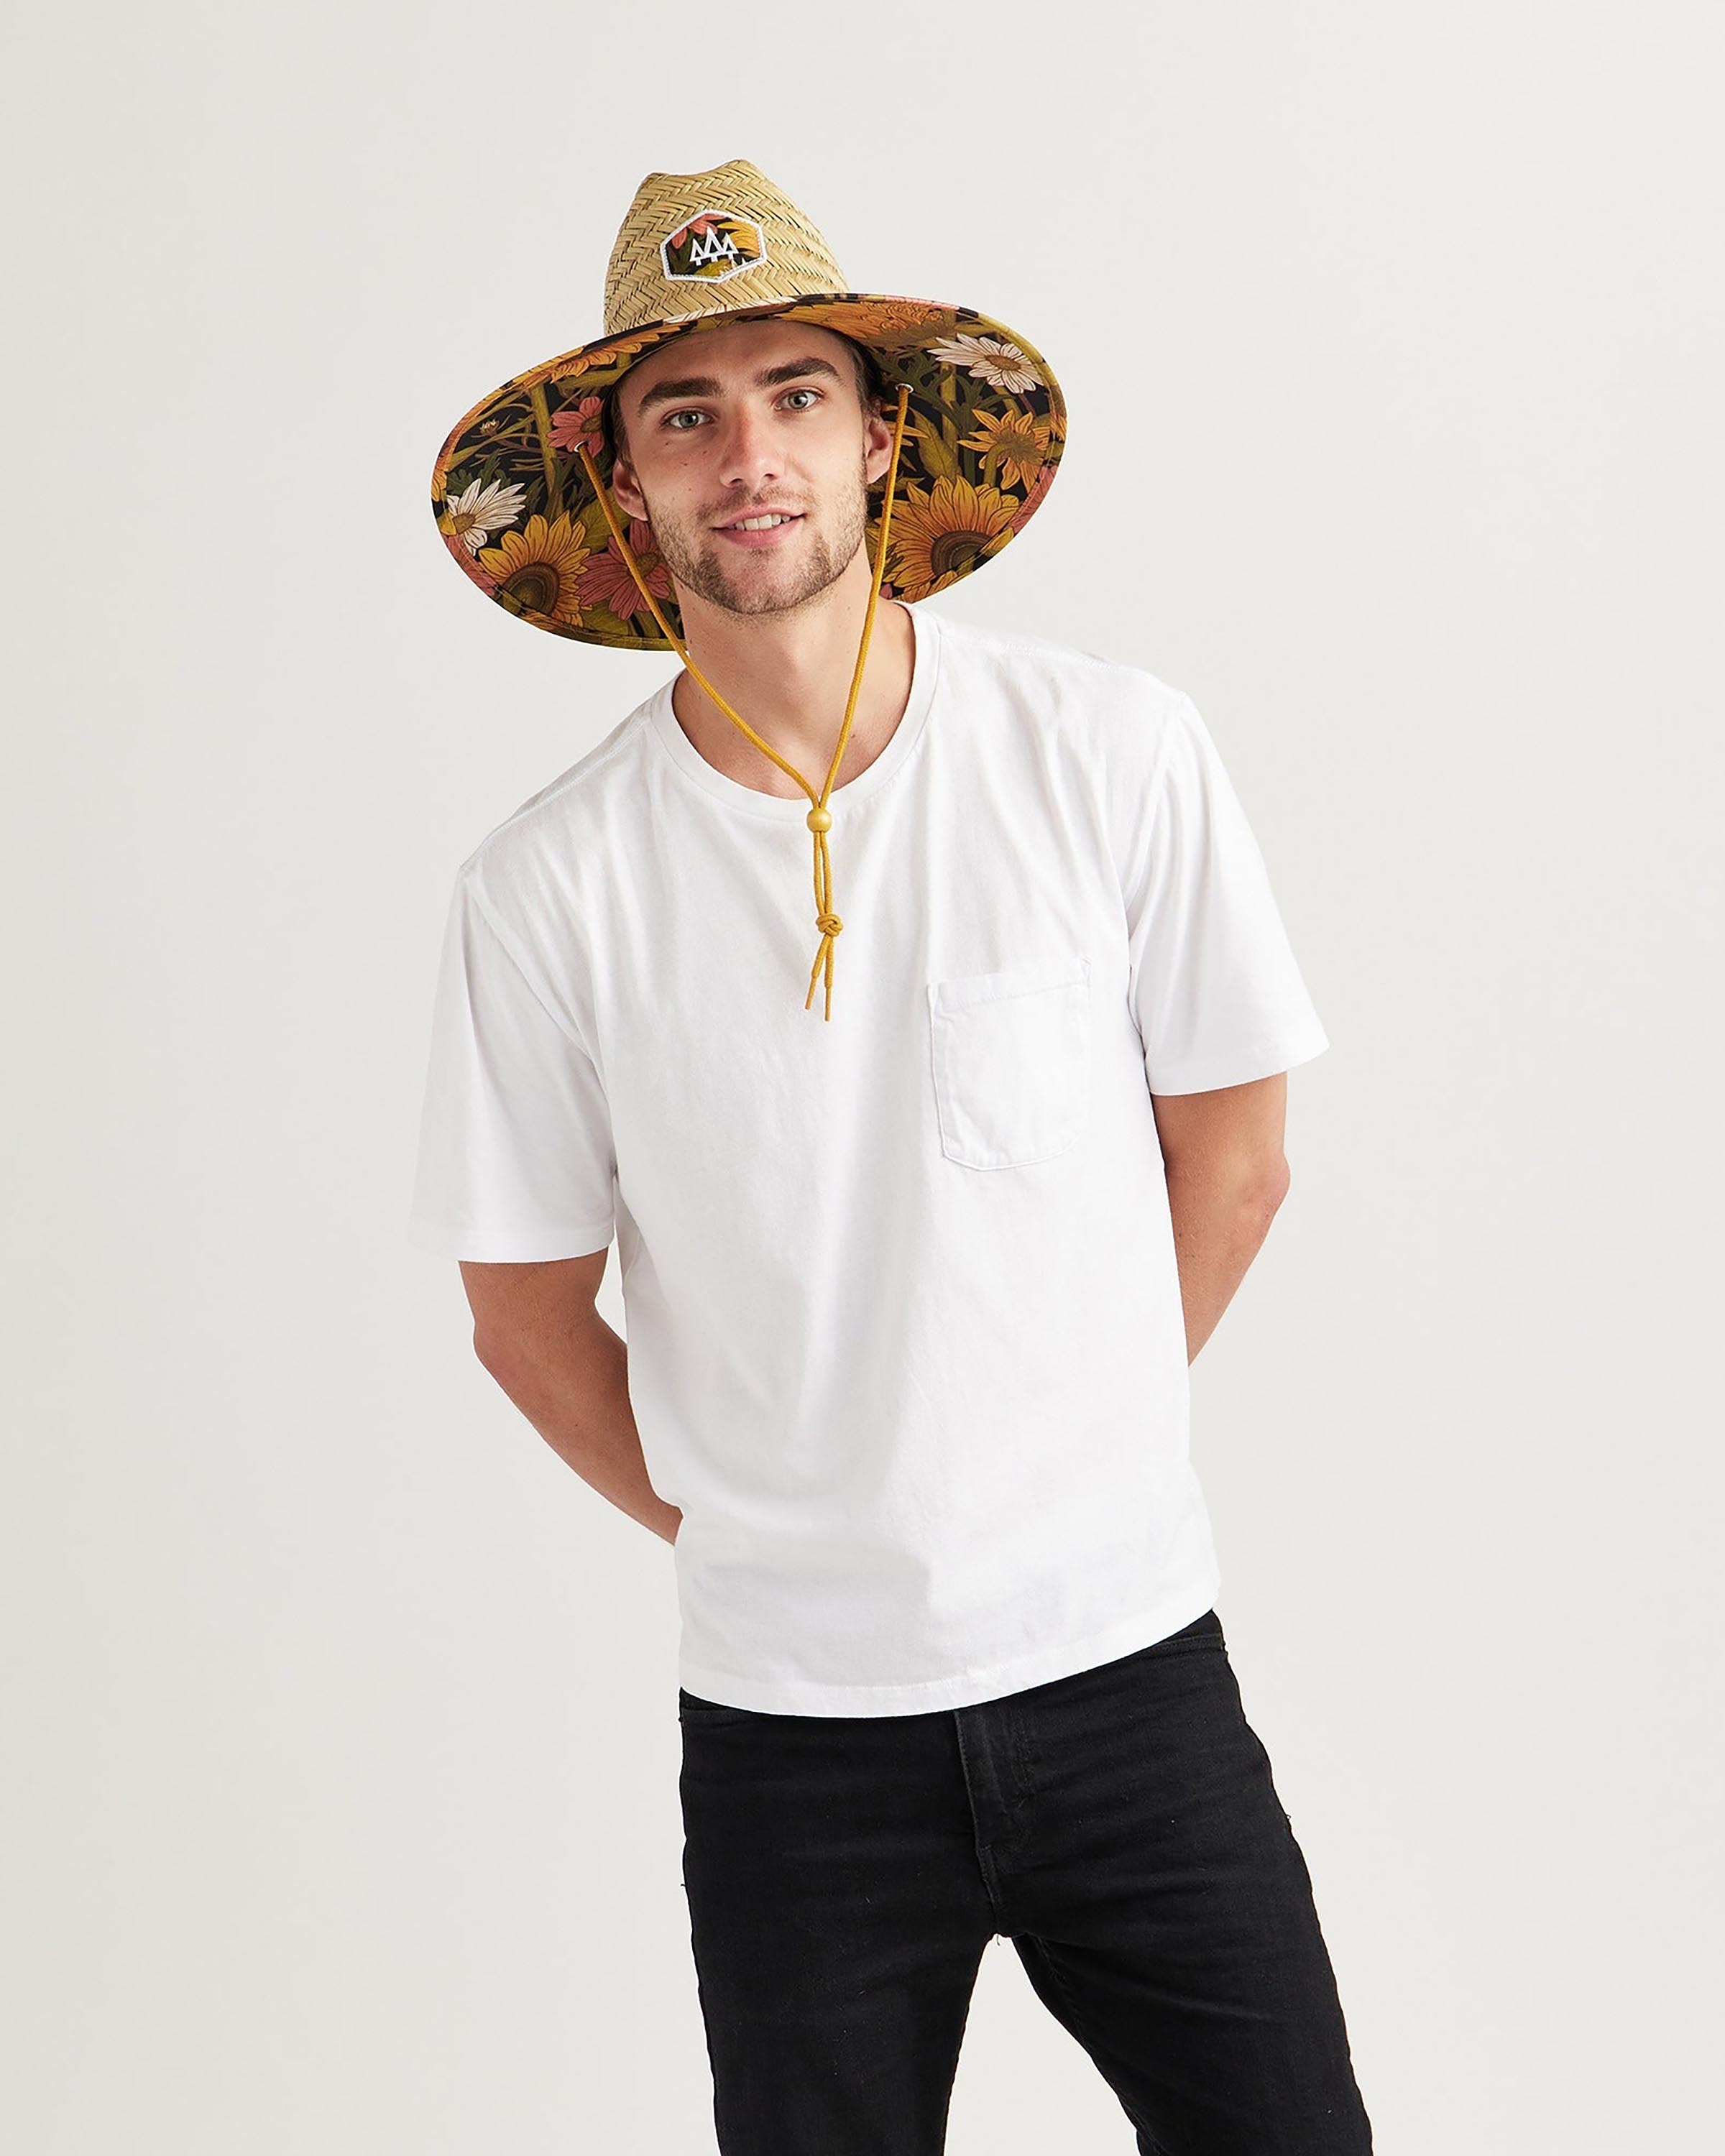 Hemlock male model looking straight wearing Woodstock straw lifeguard hat with sunflower pattern